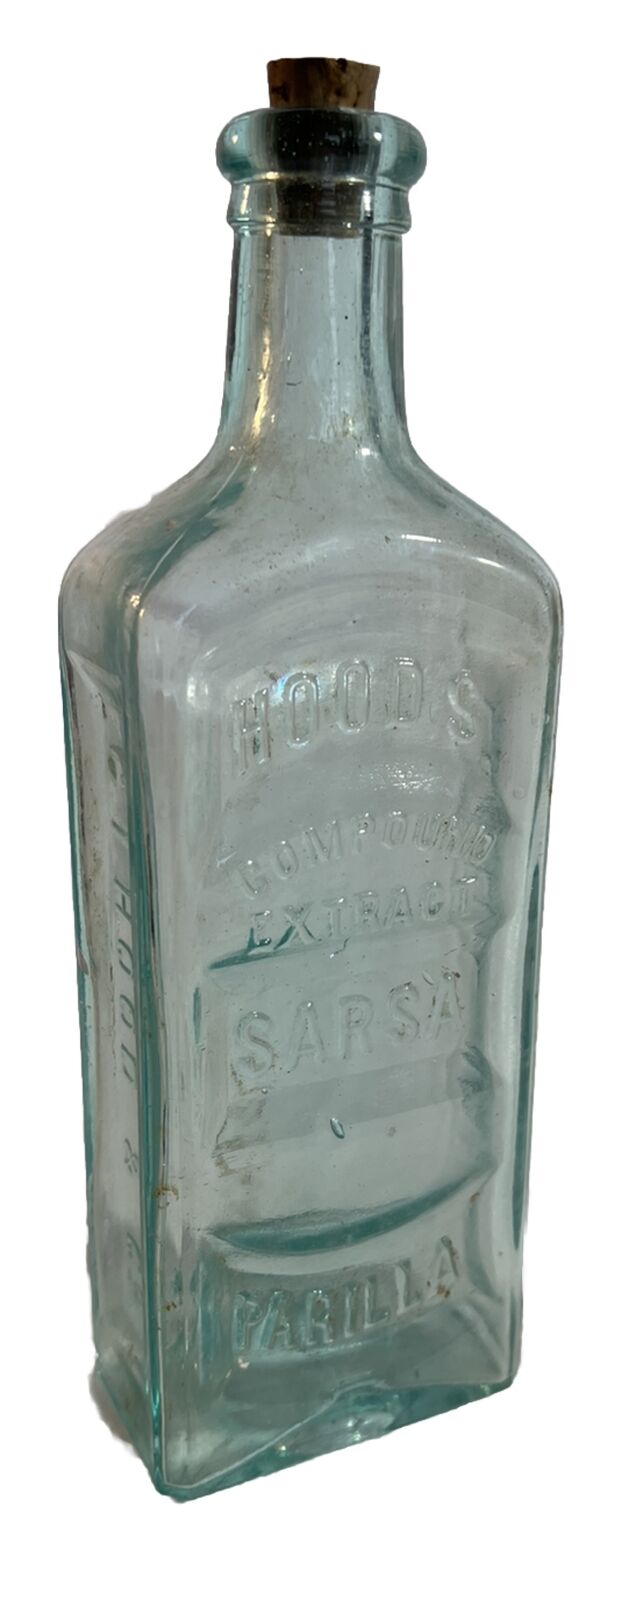 Hoods Sarsaparilla Medicine Bottle Aqua With Replacement Cork￼